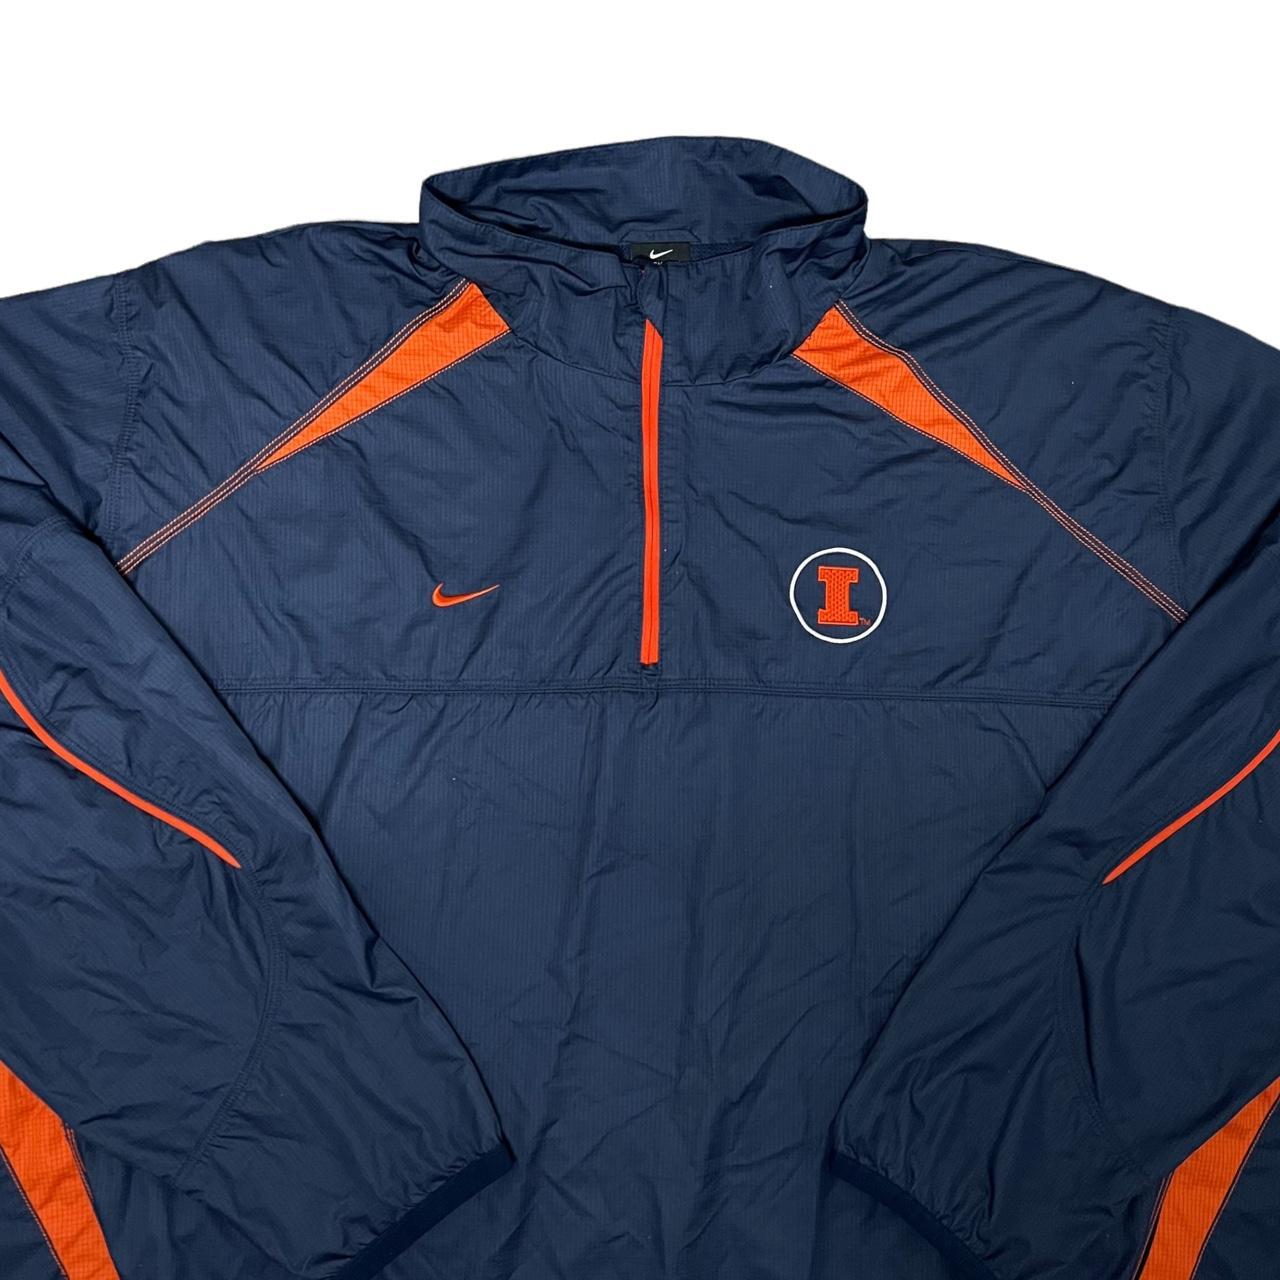 Nike Men's Navy and Orange Jacket (2)